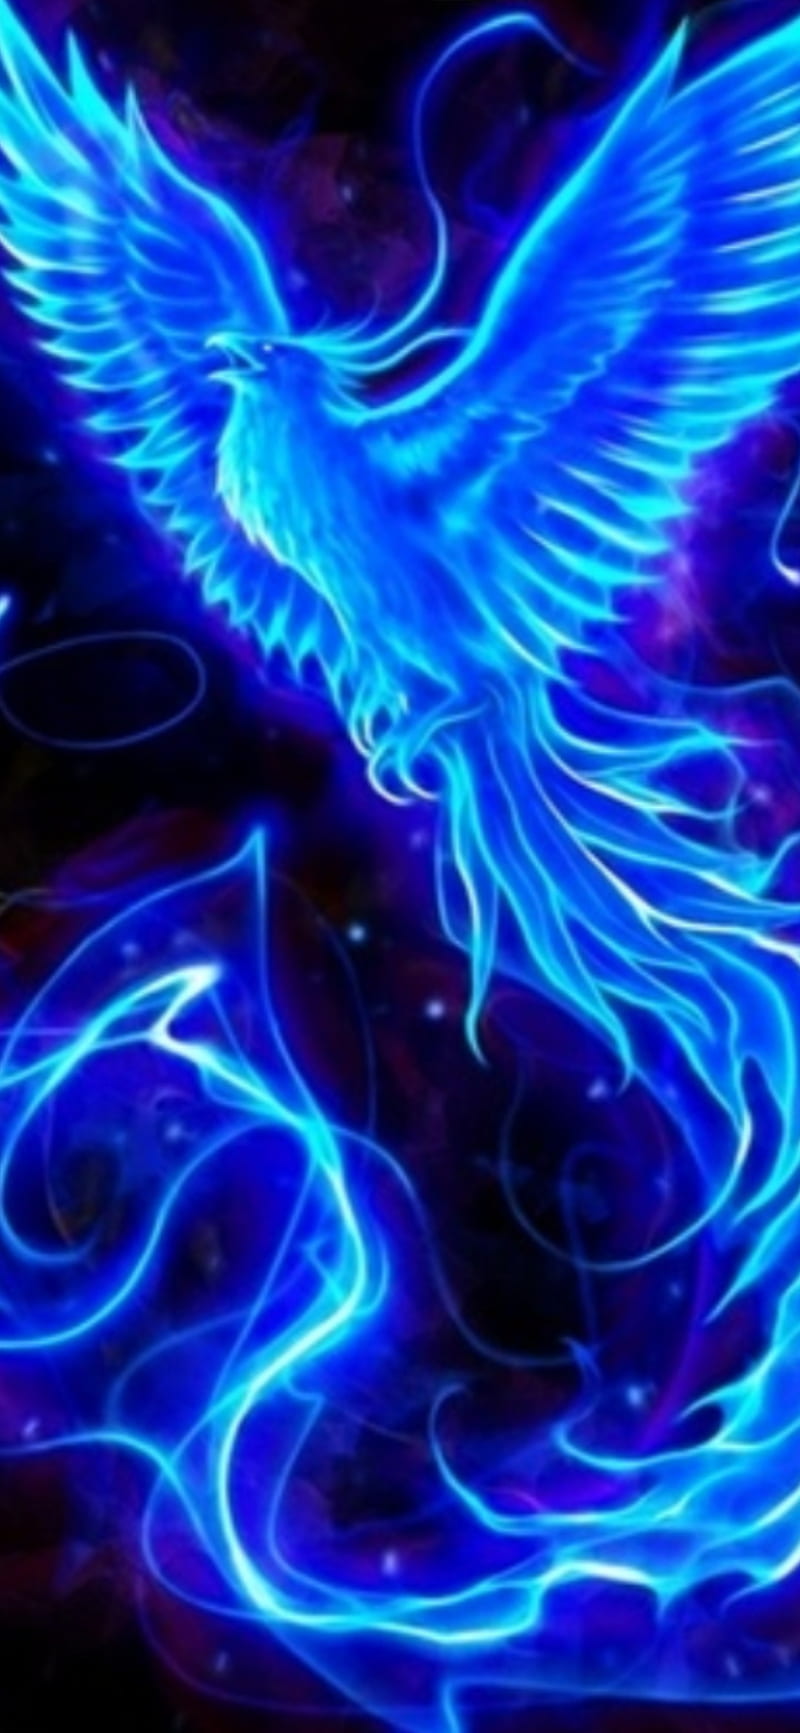 Blue phoenix, bird, fire, HD phone wallpaper